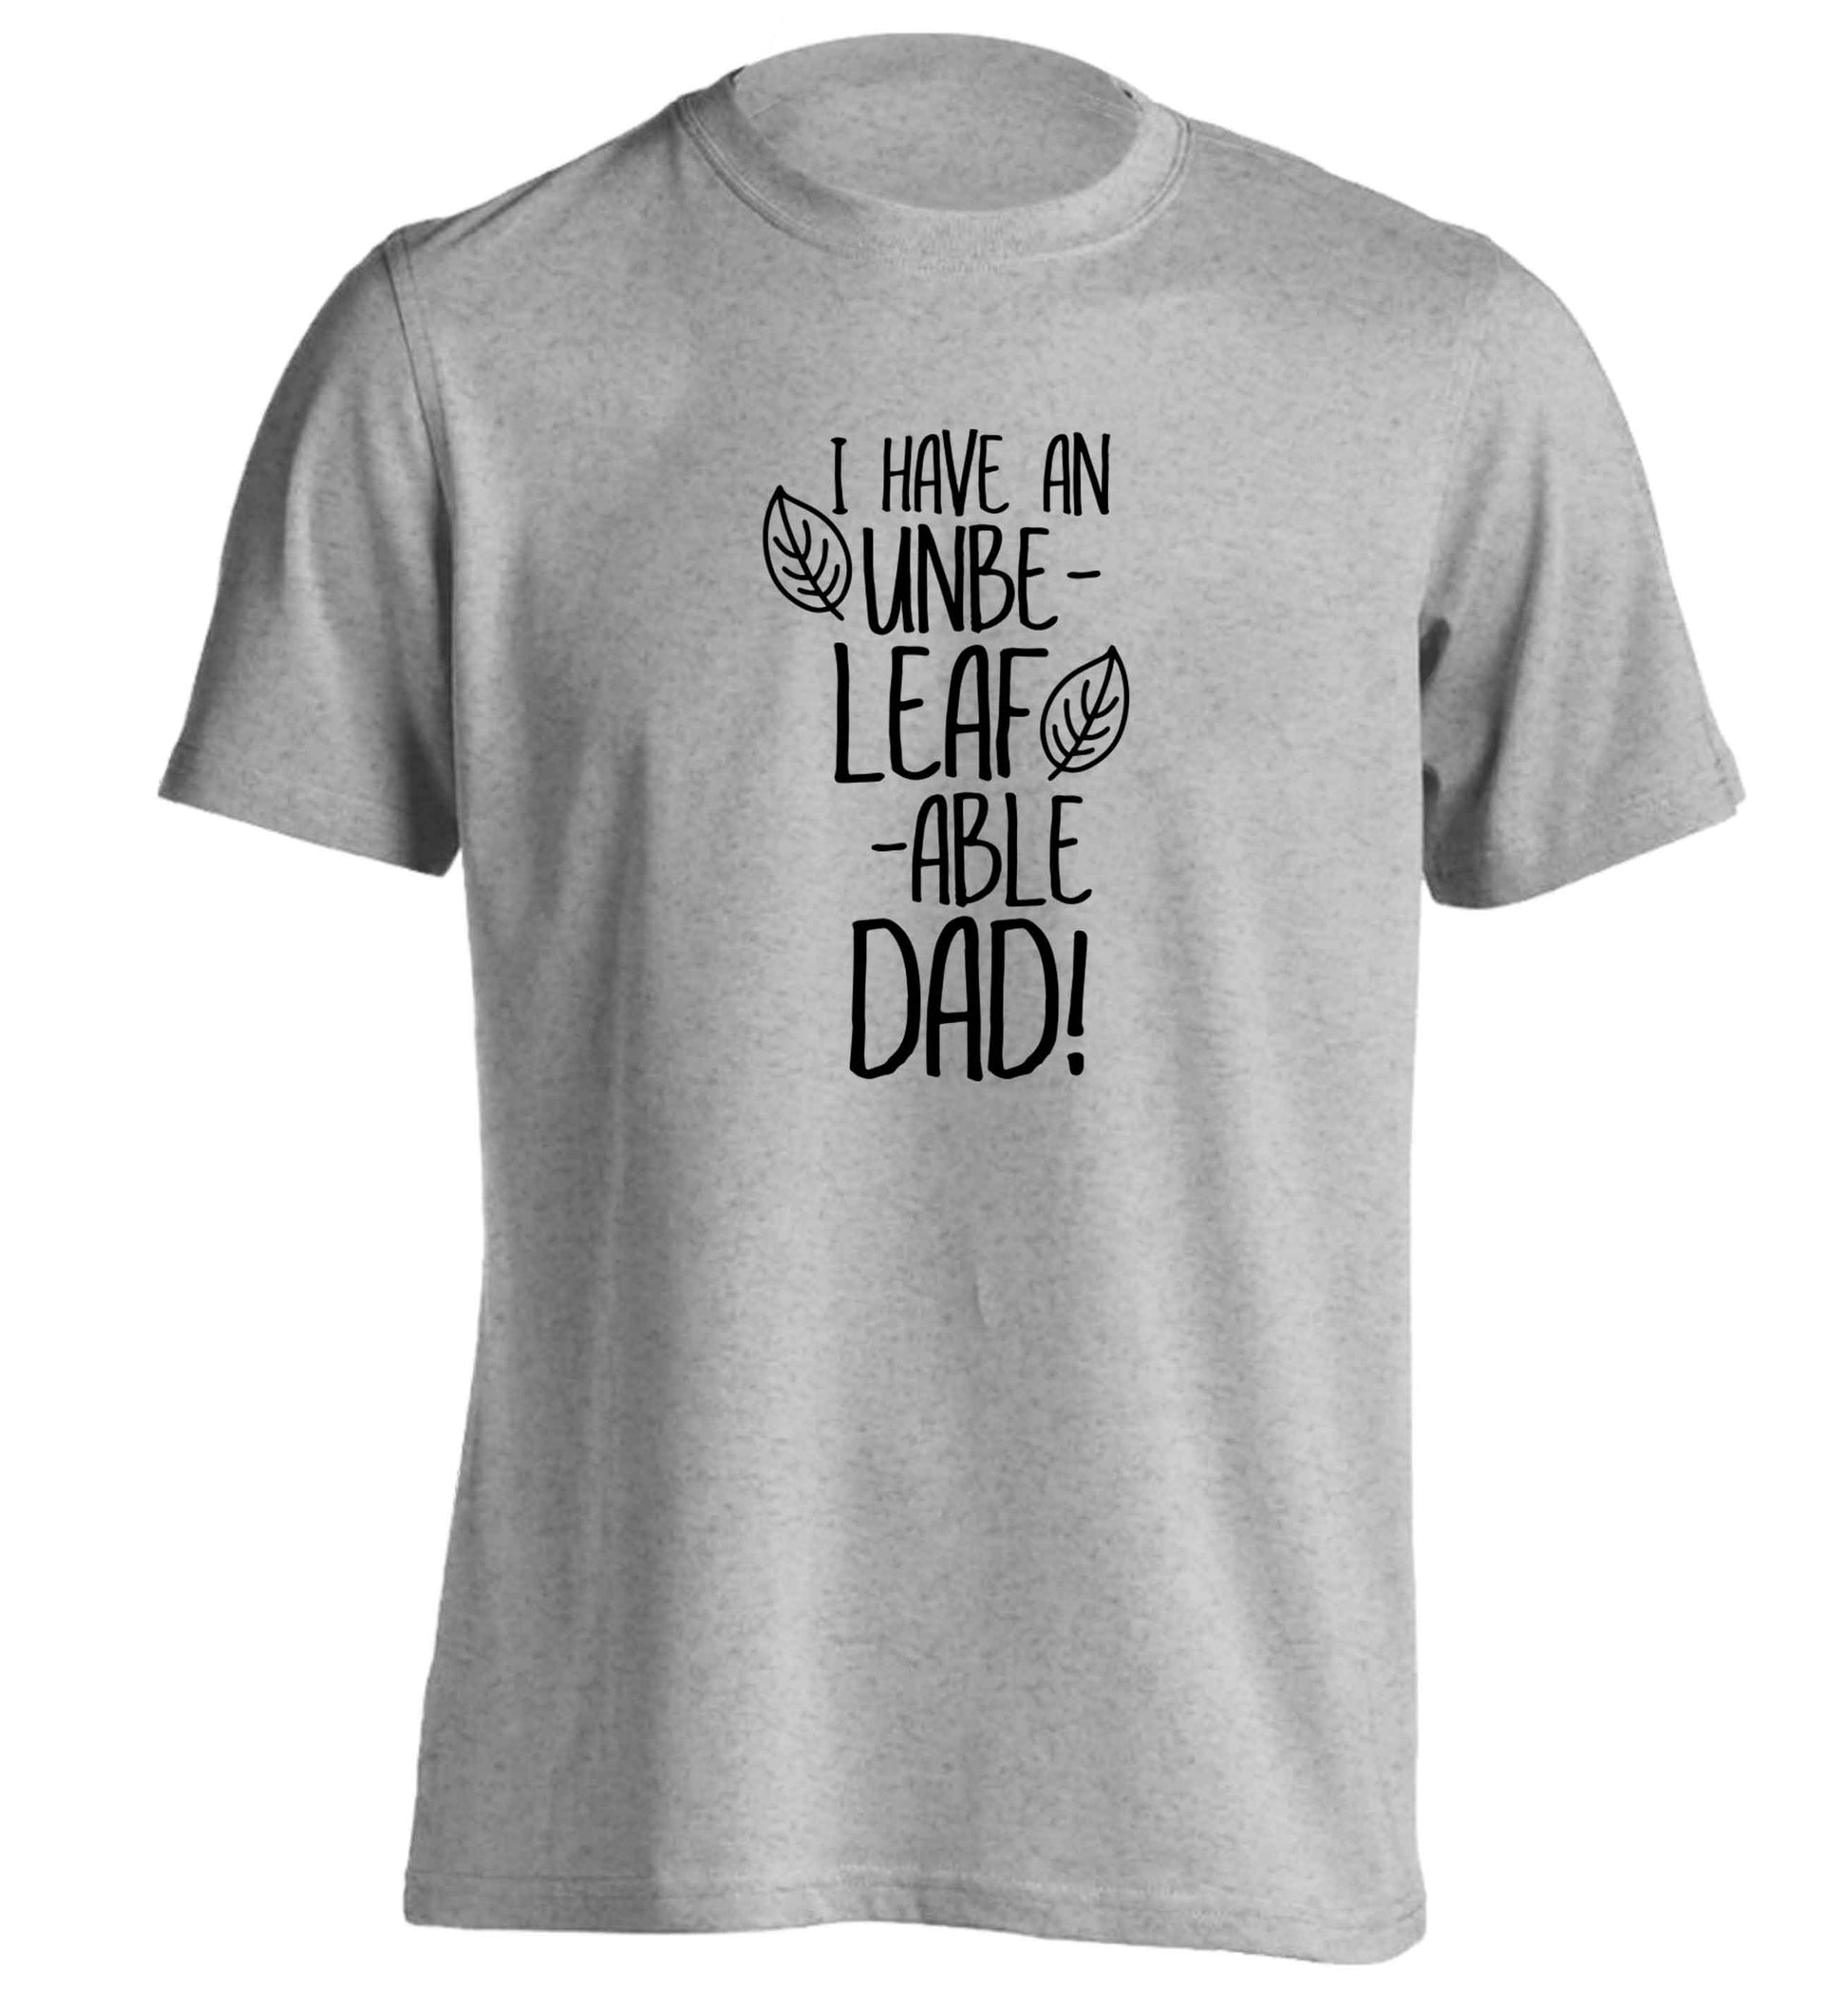 I have an unbe-leaf-able dad adults unisex grey Tshirt 2XL